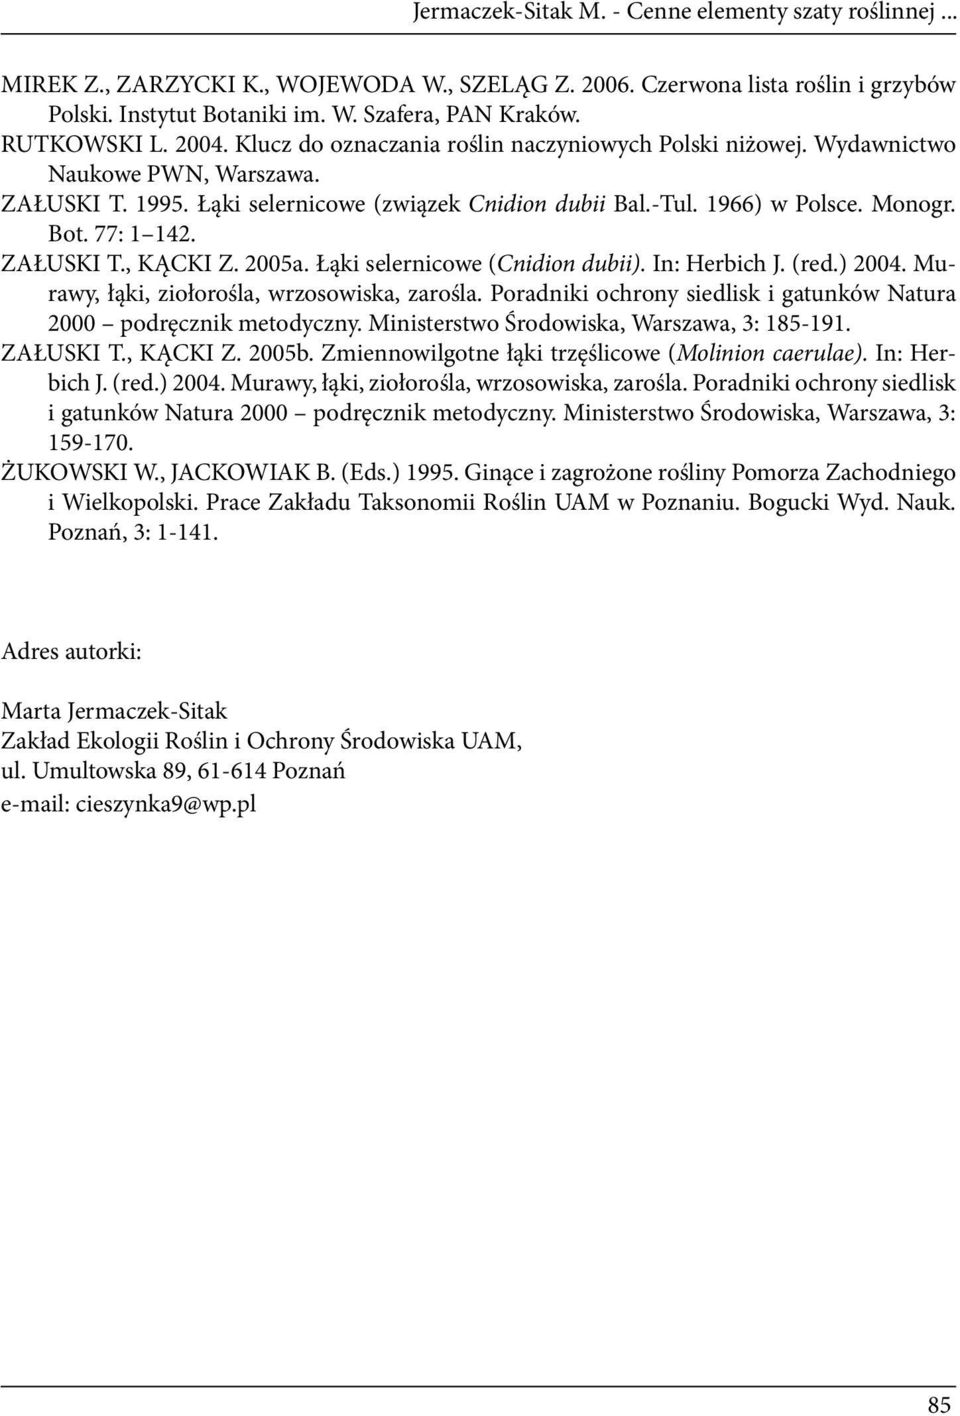 Bot. 77: 1 142. ZAŁUSKI T., KĄCKI Z. 2005a. Łąki selernicowe (Cnidion dubii). In: Herbich J. (red.) 2004. Murawy, łąki, ziołorośla, wrzosowiska, zarośla.